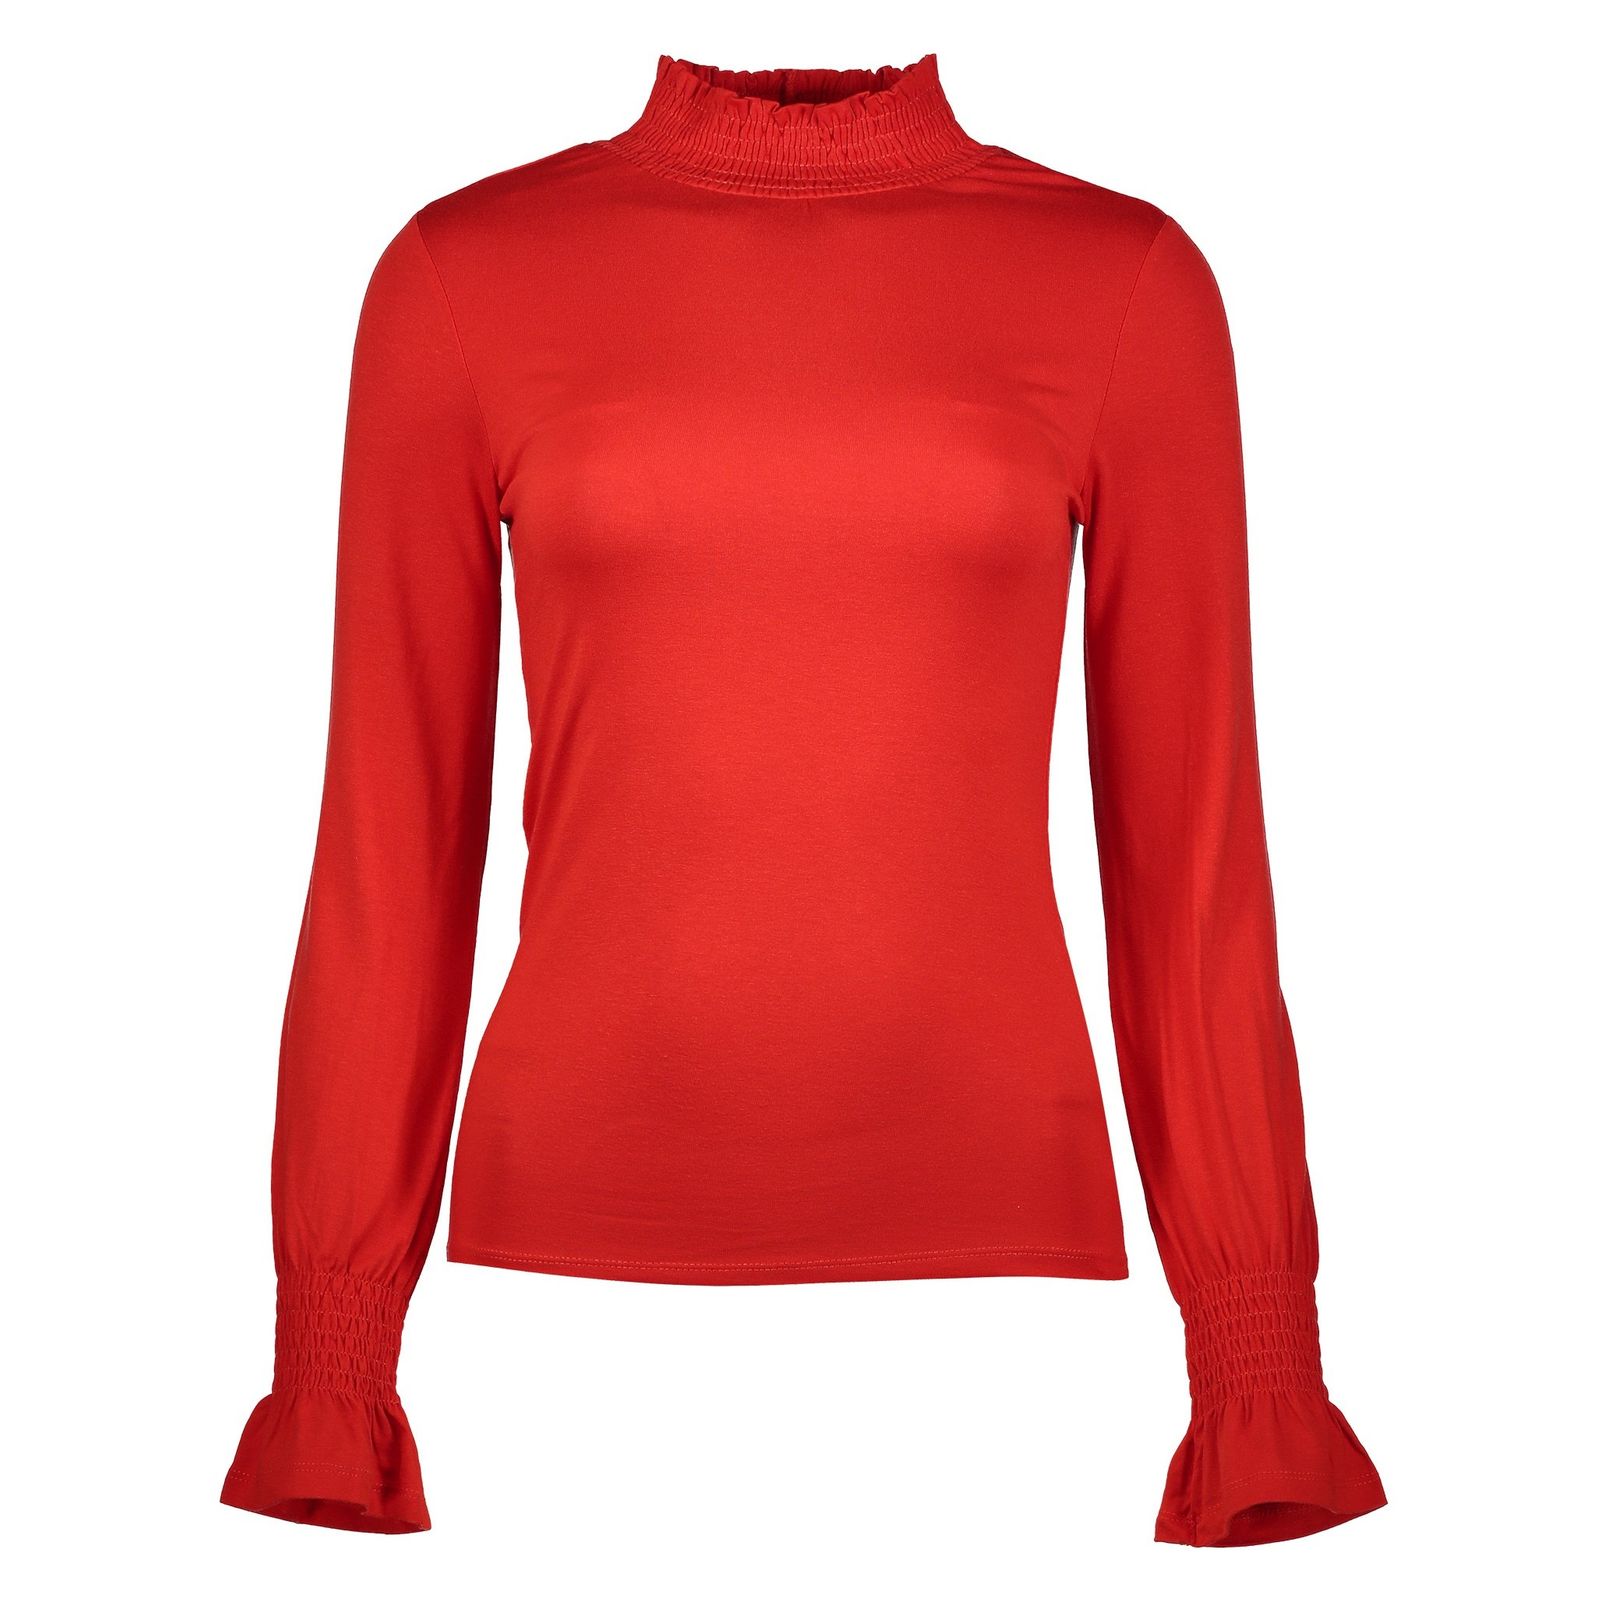 تی شرت ویسکوز یقه اسکی زنانه - رد هرینگ - قرمز - 2